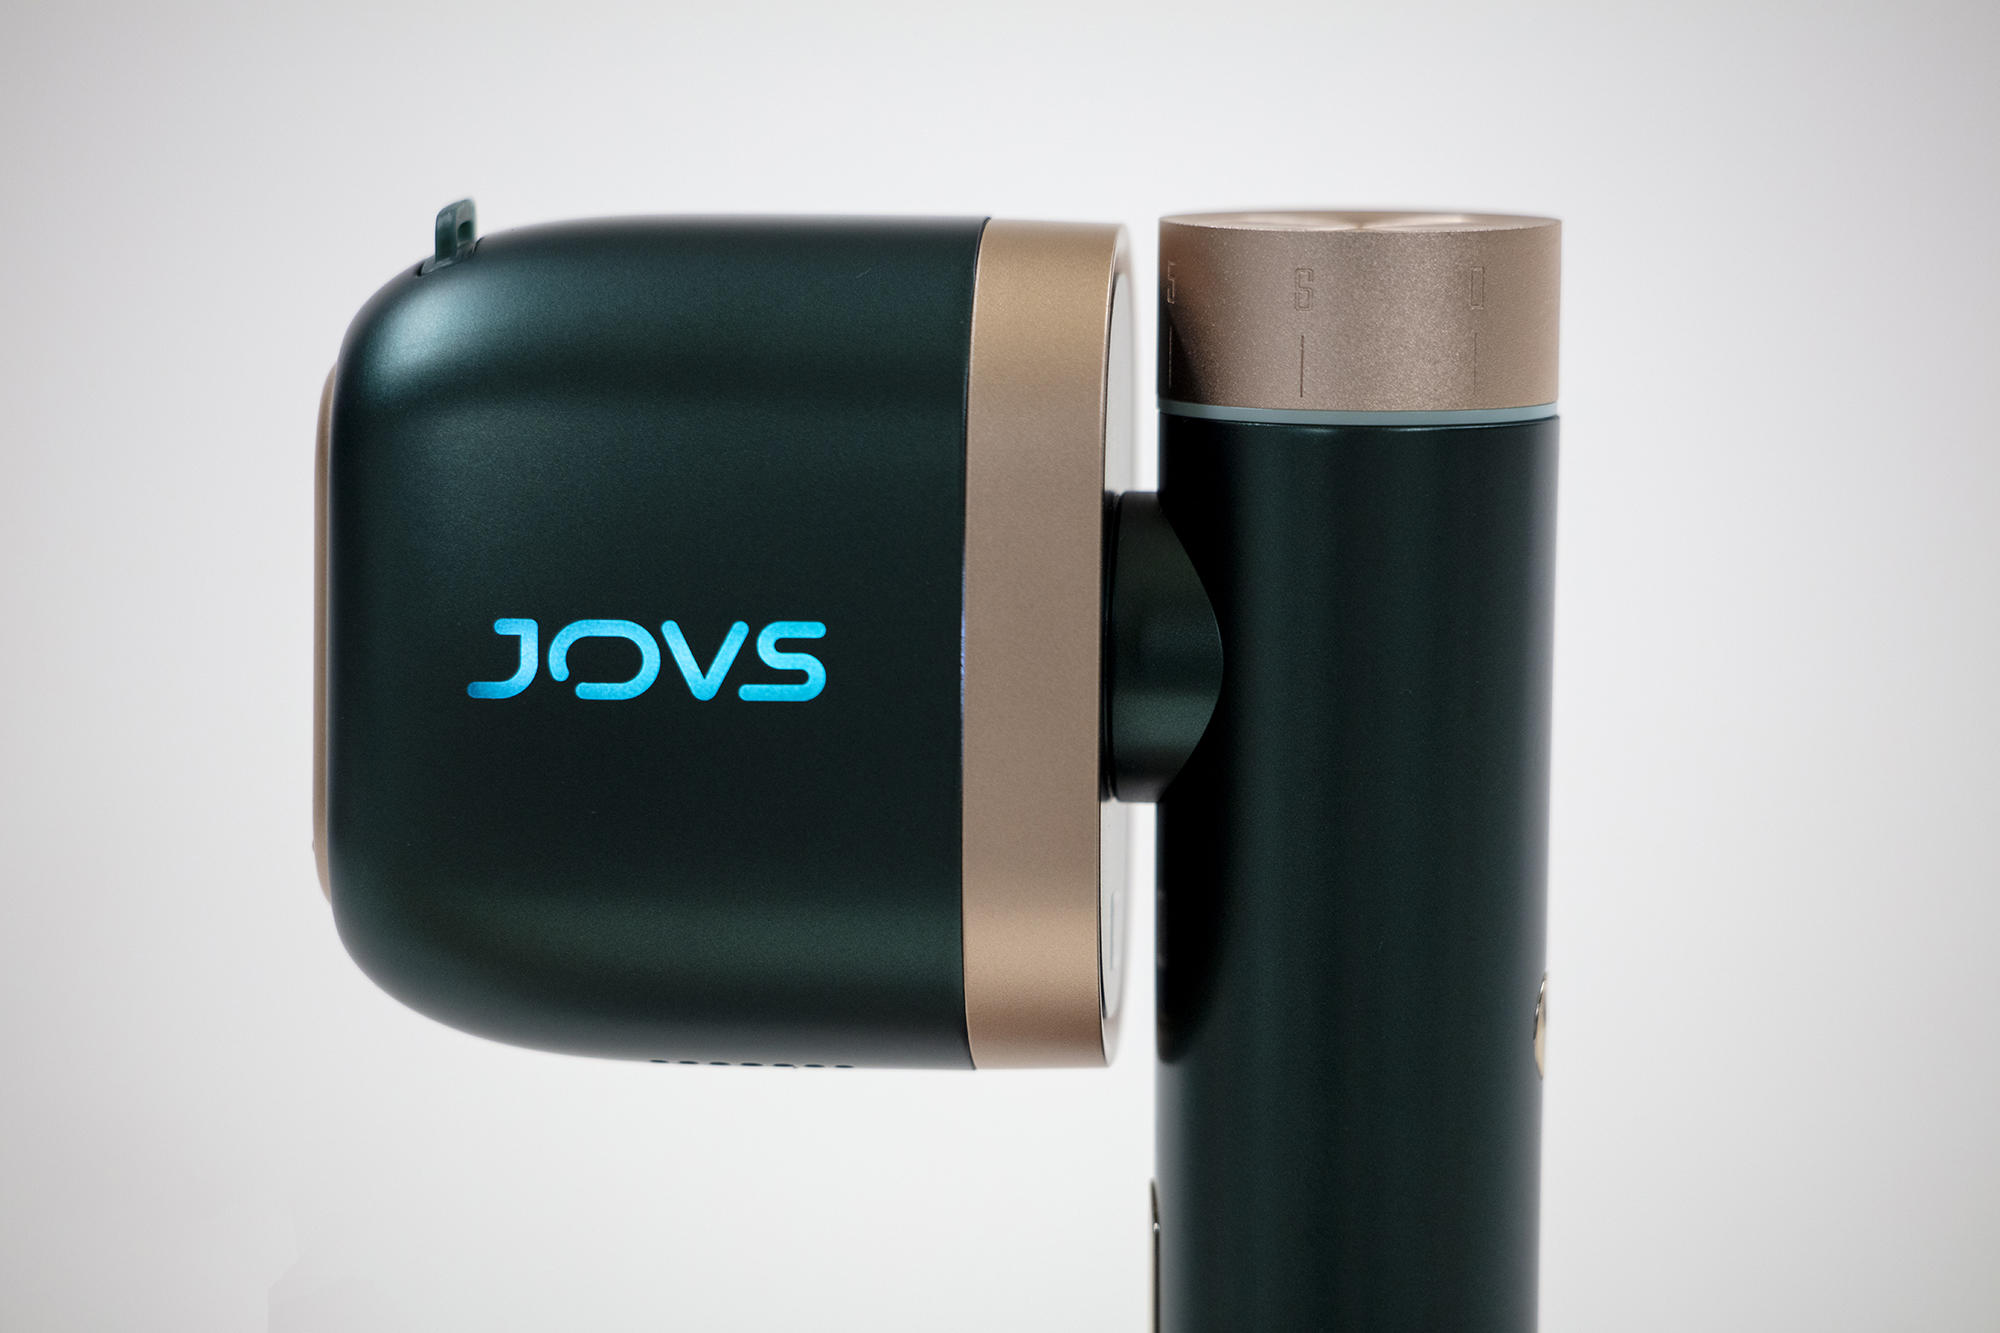 JOVS(ジョブズ) T3 Pro max(ティースリープロマックス) 家庭用脱毛器 J978